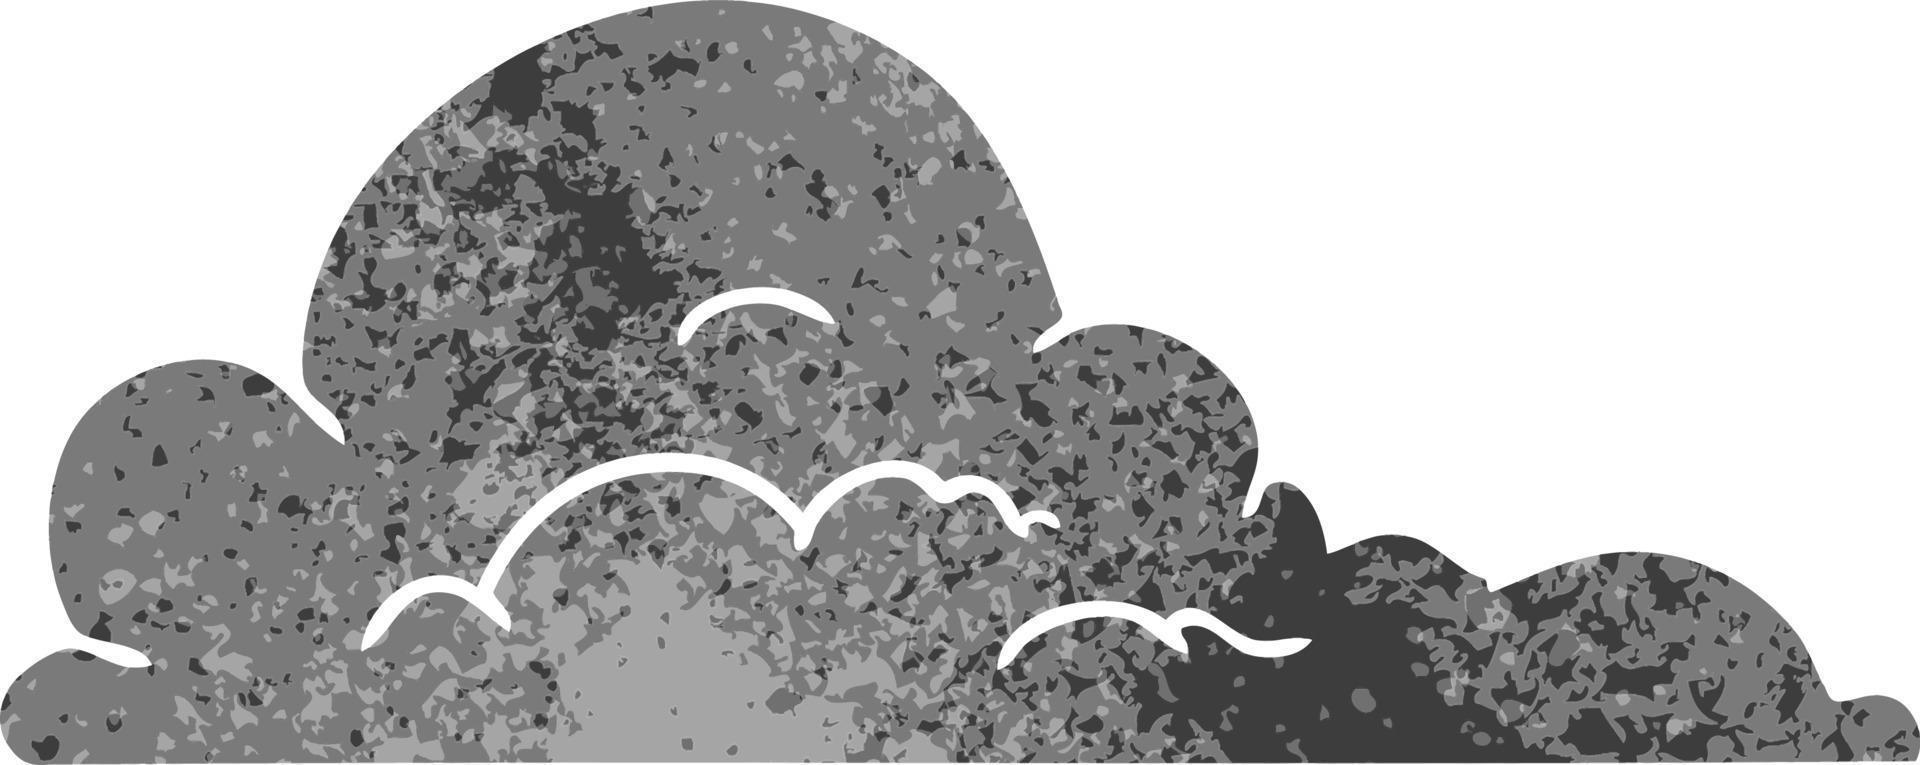 garabato de dibujos animados retro de nubes grandes blancas vector